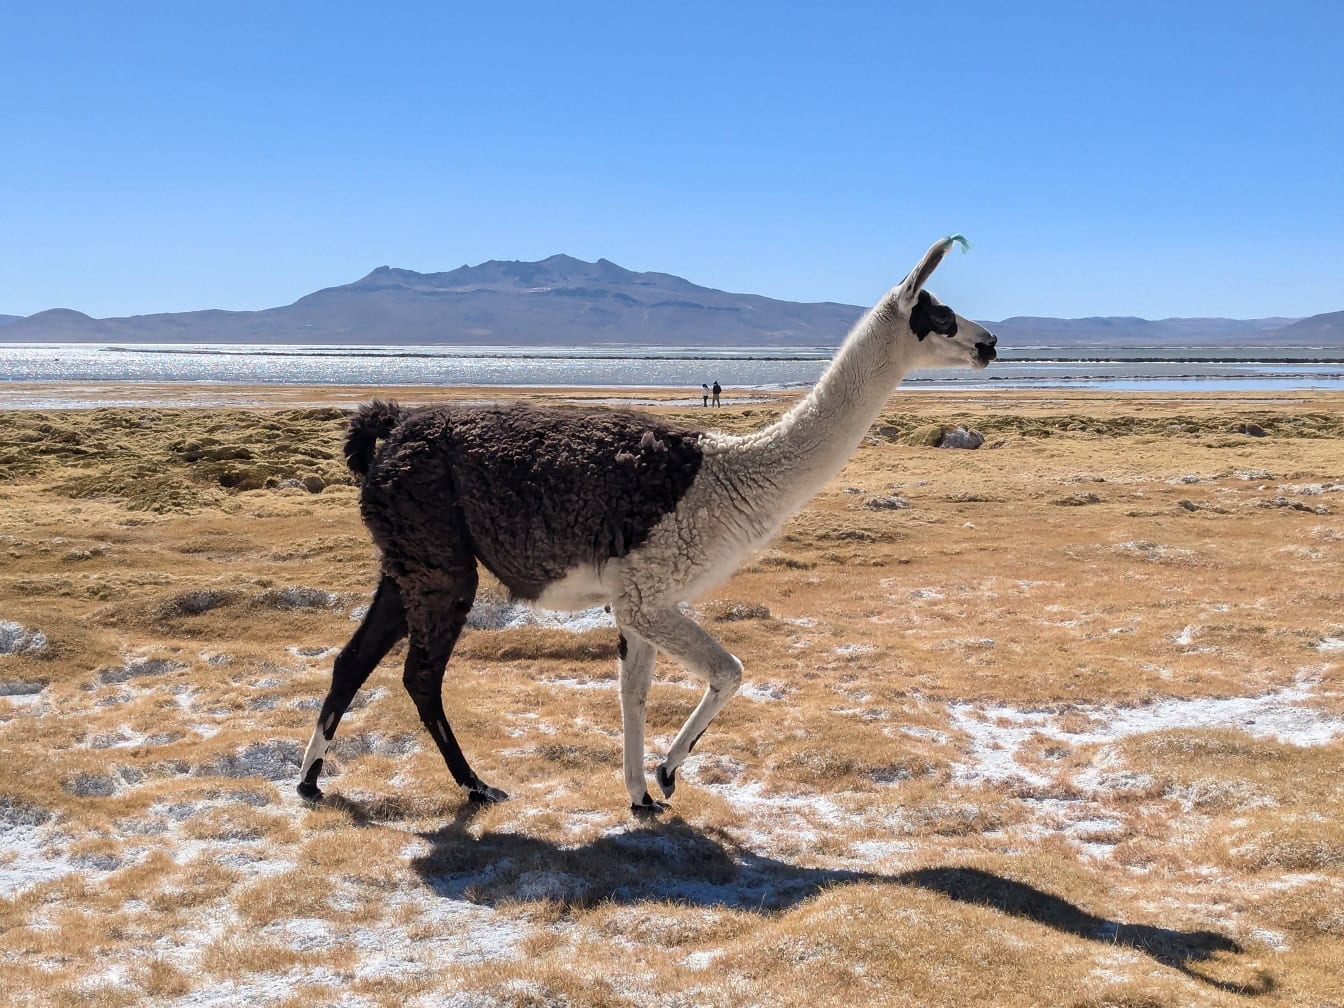 Llama blanca y negra caminando en un campo seco y salado con el lago Salinas en el fondo en la meseta en los Andes en Perú